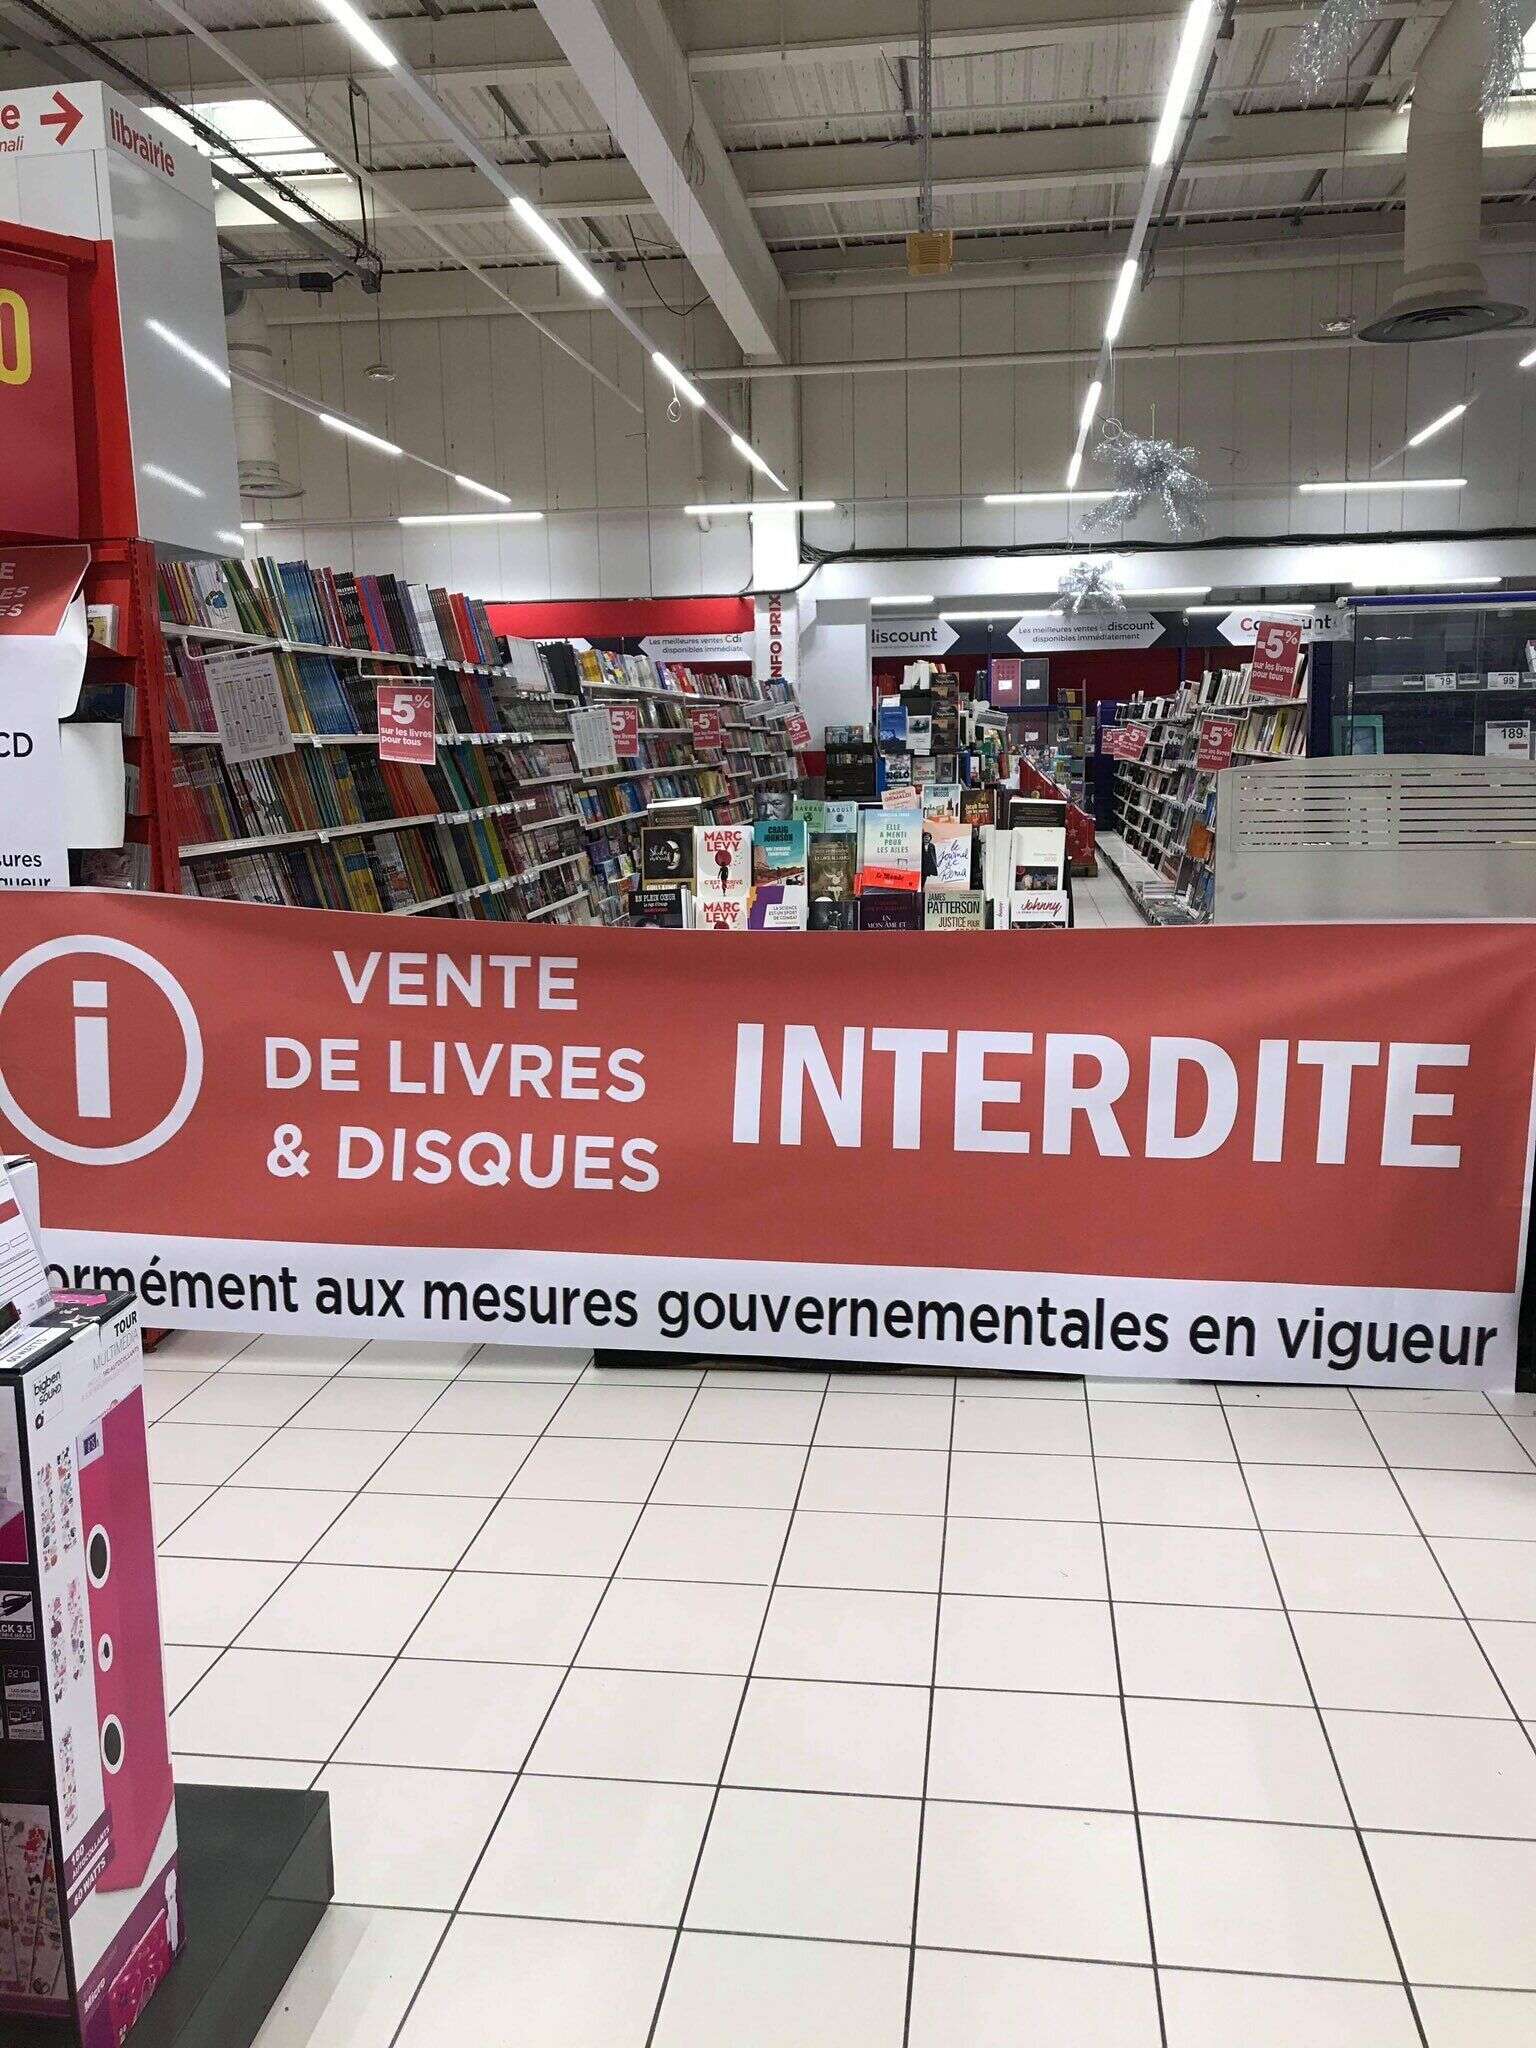 La photo d'une banderole prise dans le Géant Casino d'Ajaccio (Corse du Sud) après l'interdiction de vendre des livres par le gouvernement.